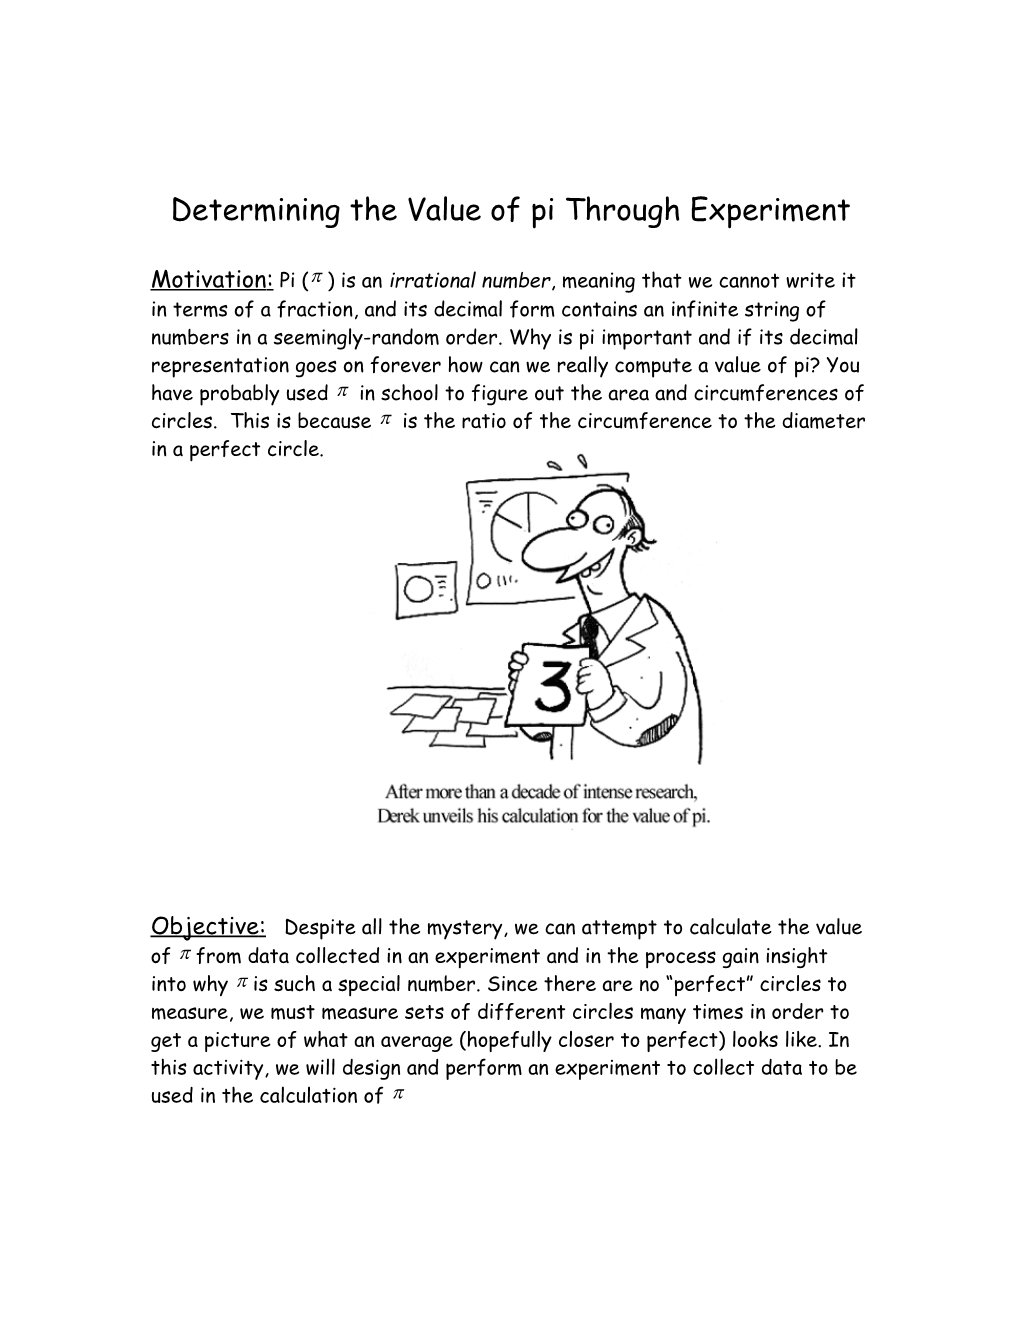 Determining the Value of Pi Through Experiment